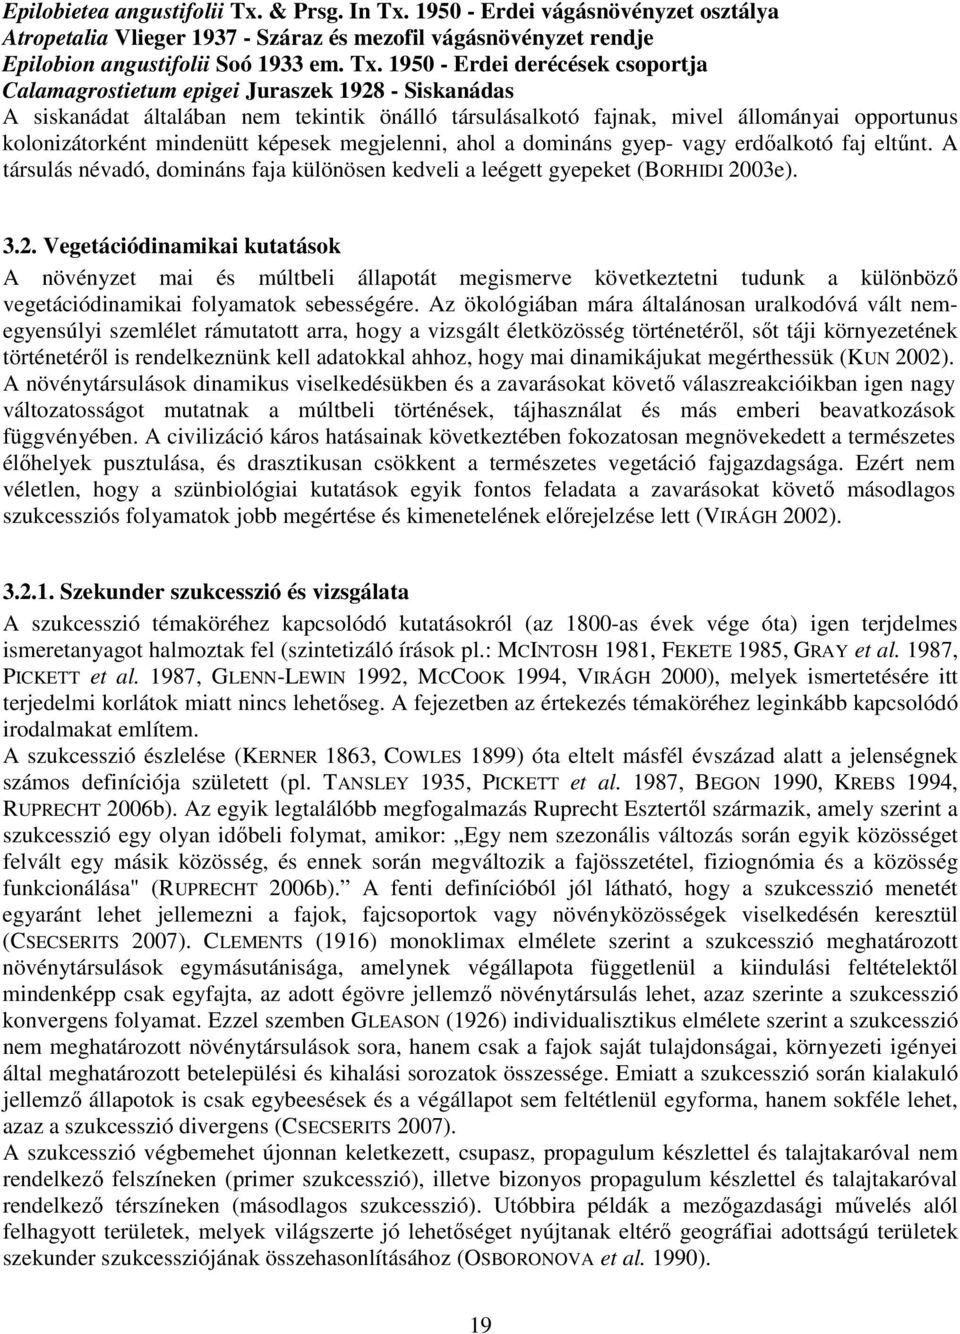 1950 - Erdei vágásnövényzet osztálya Atropetalia Vlieger 1937 - Száraz és mezofil vágásnövényzet rendje Epilobion angustifolii Soó 1933 em. Tx.